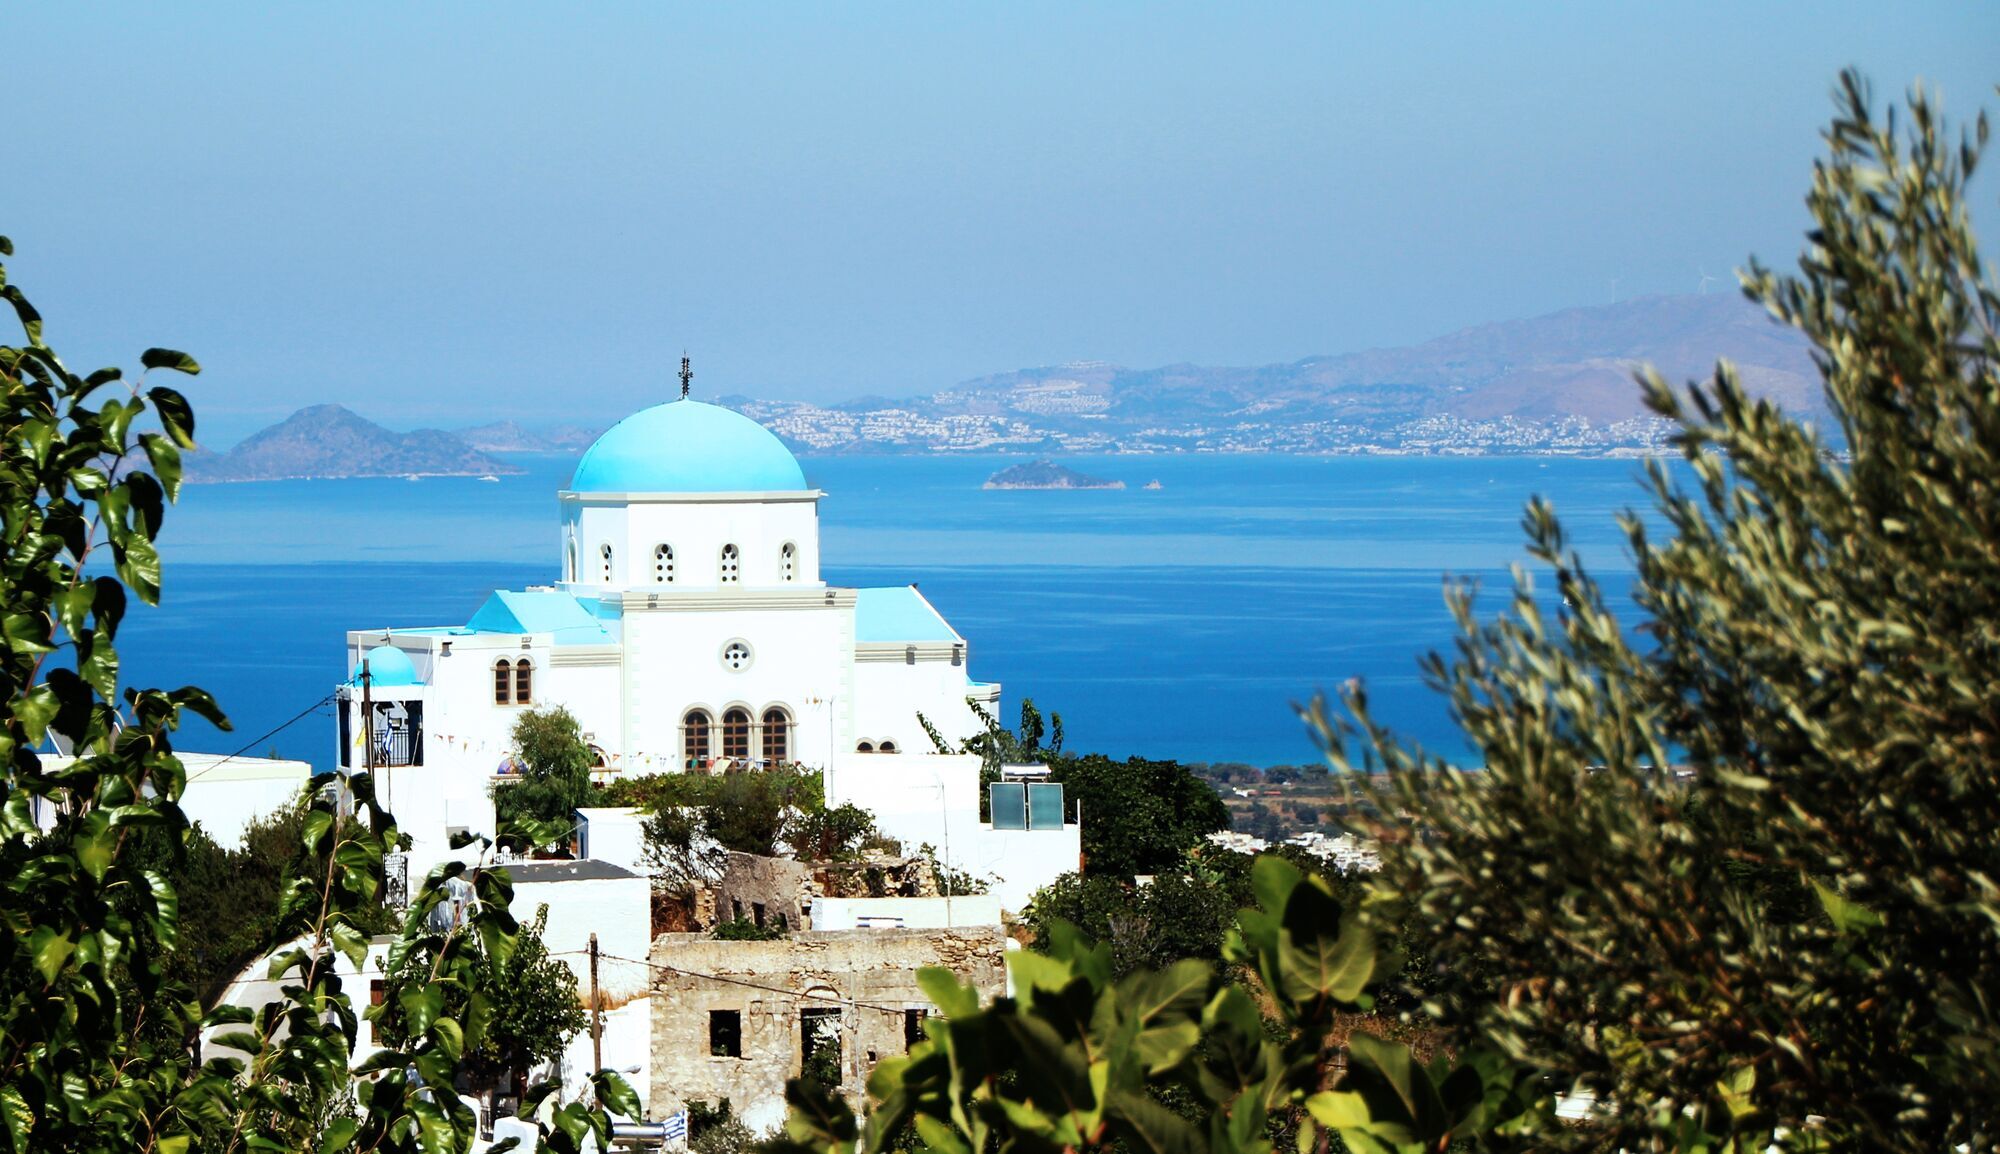 Grecja: podróż przez kraj obmywany przez 8 mórz